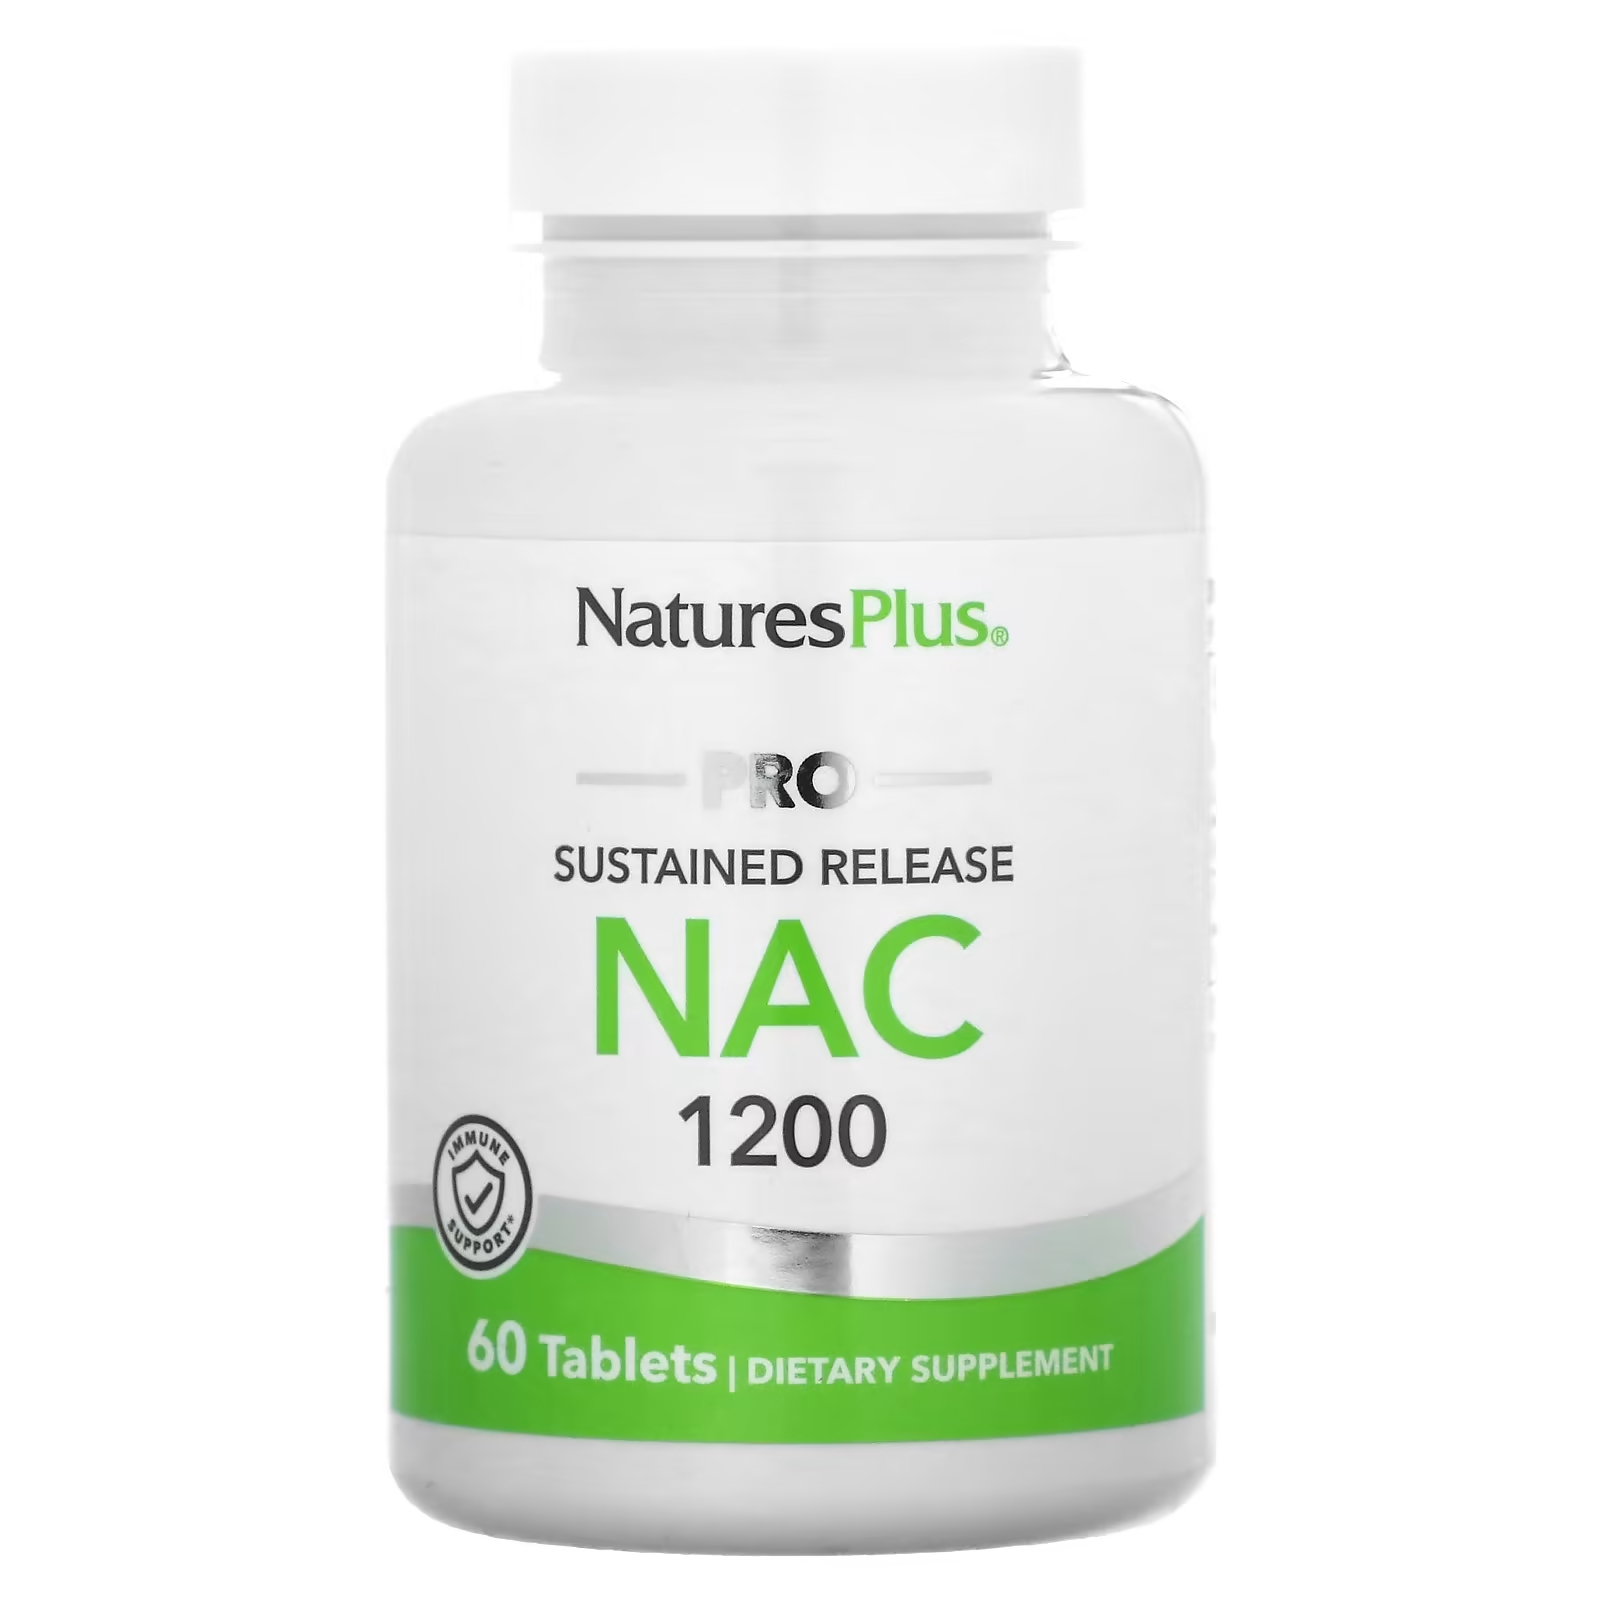 NaturesPlus Pro NAC 1200 пролонгированного действия, 60 таблеток